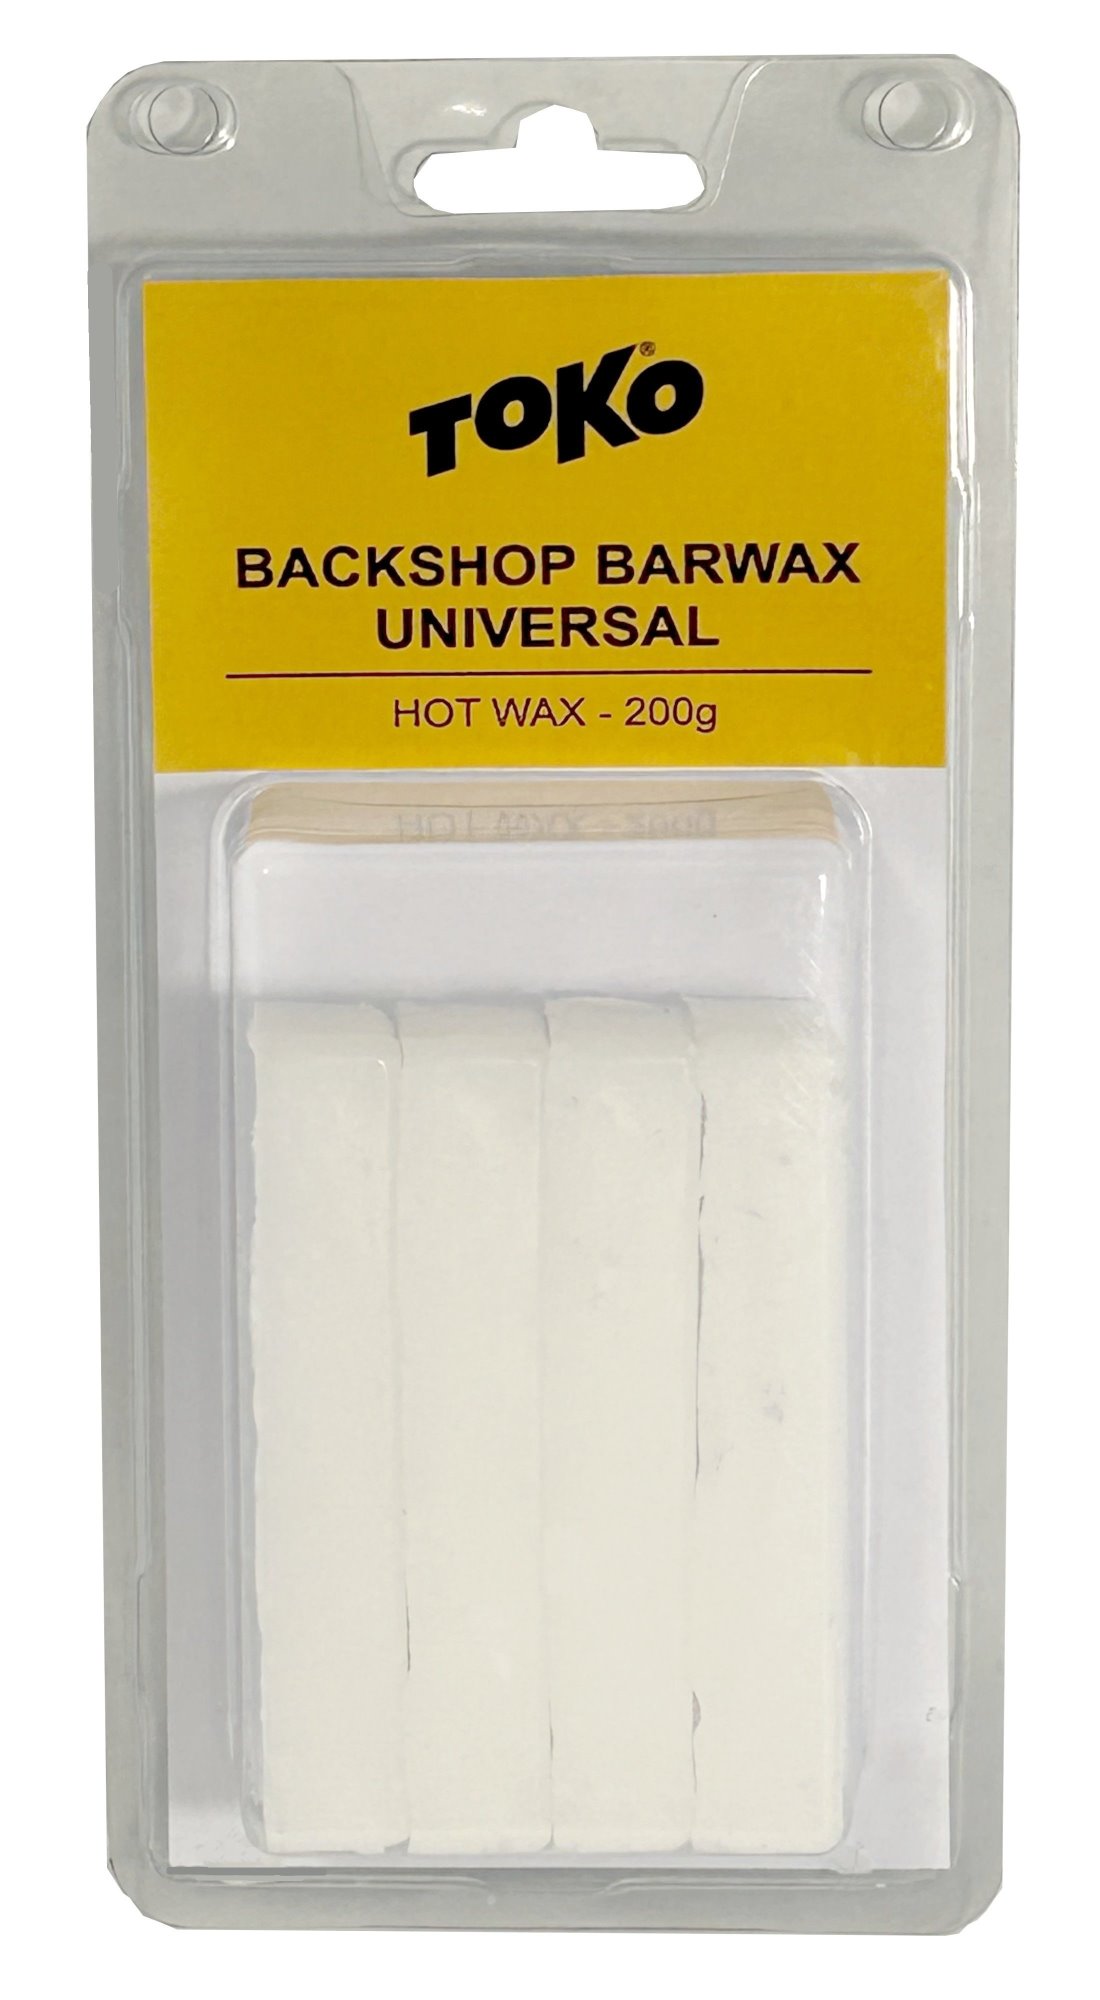 TOKO Backshop Barwax "UNIVERSAL", 200g